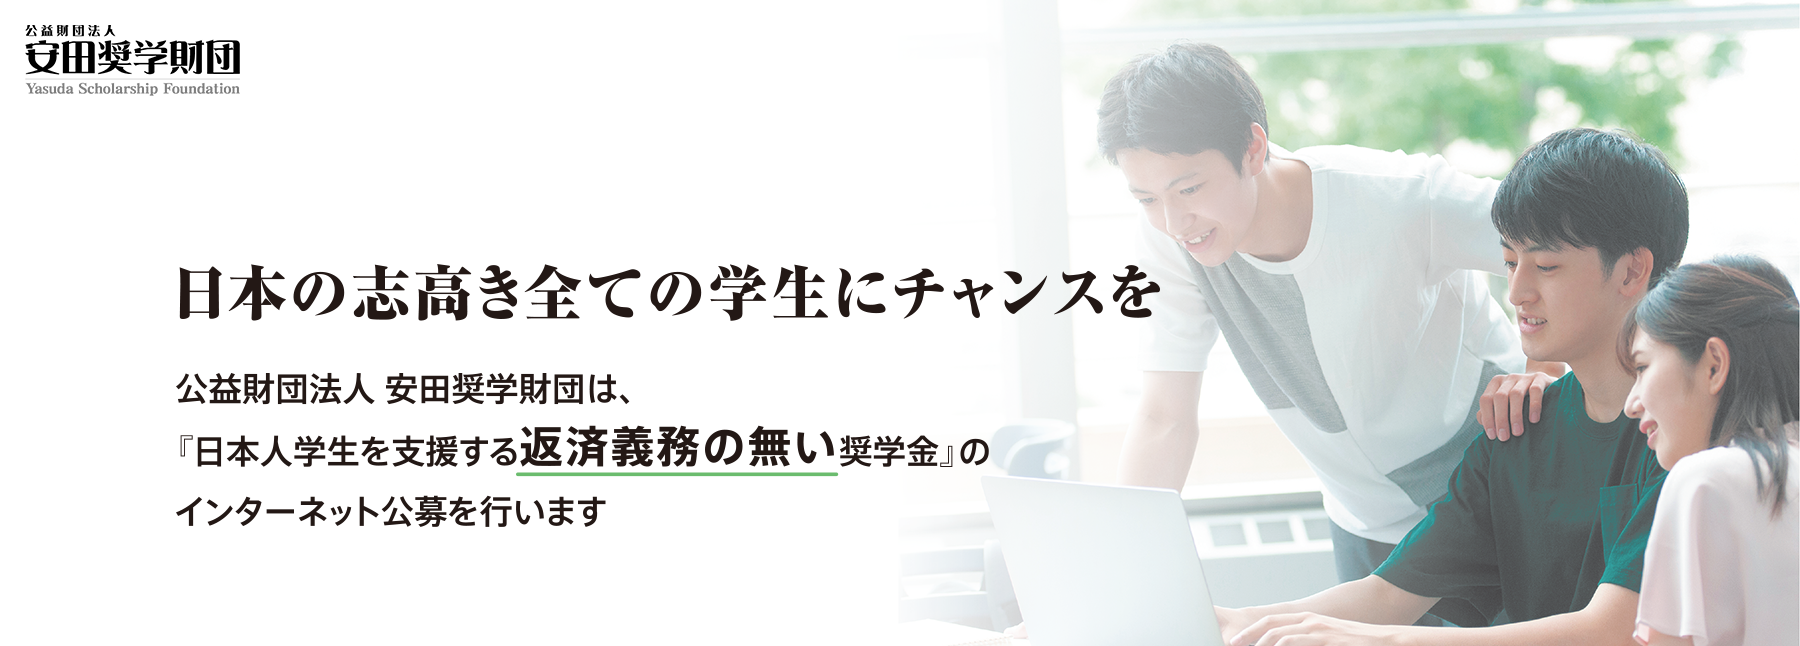 日本の志高き全ての学生にチャンスを 公益財団法人安田奨学財団は、『日本人学生を支援する返済義務の無い奨学金』のインターネット公募を行います